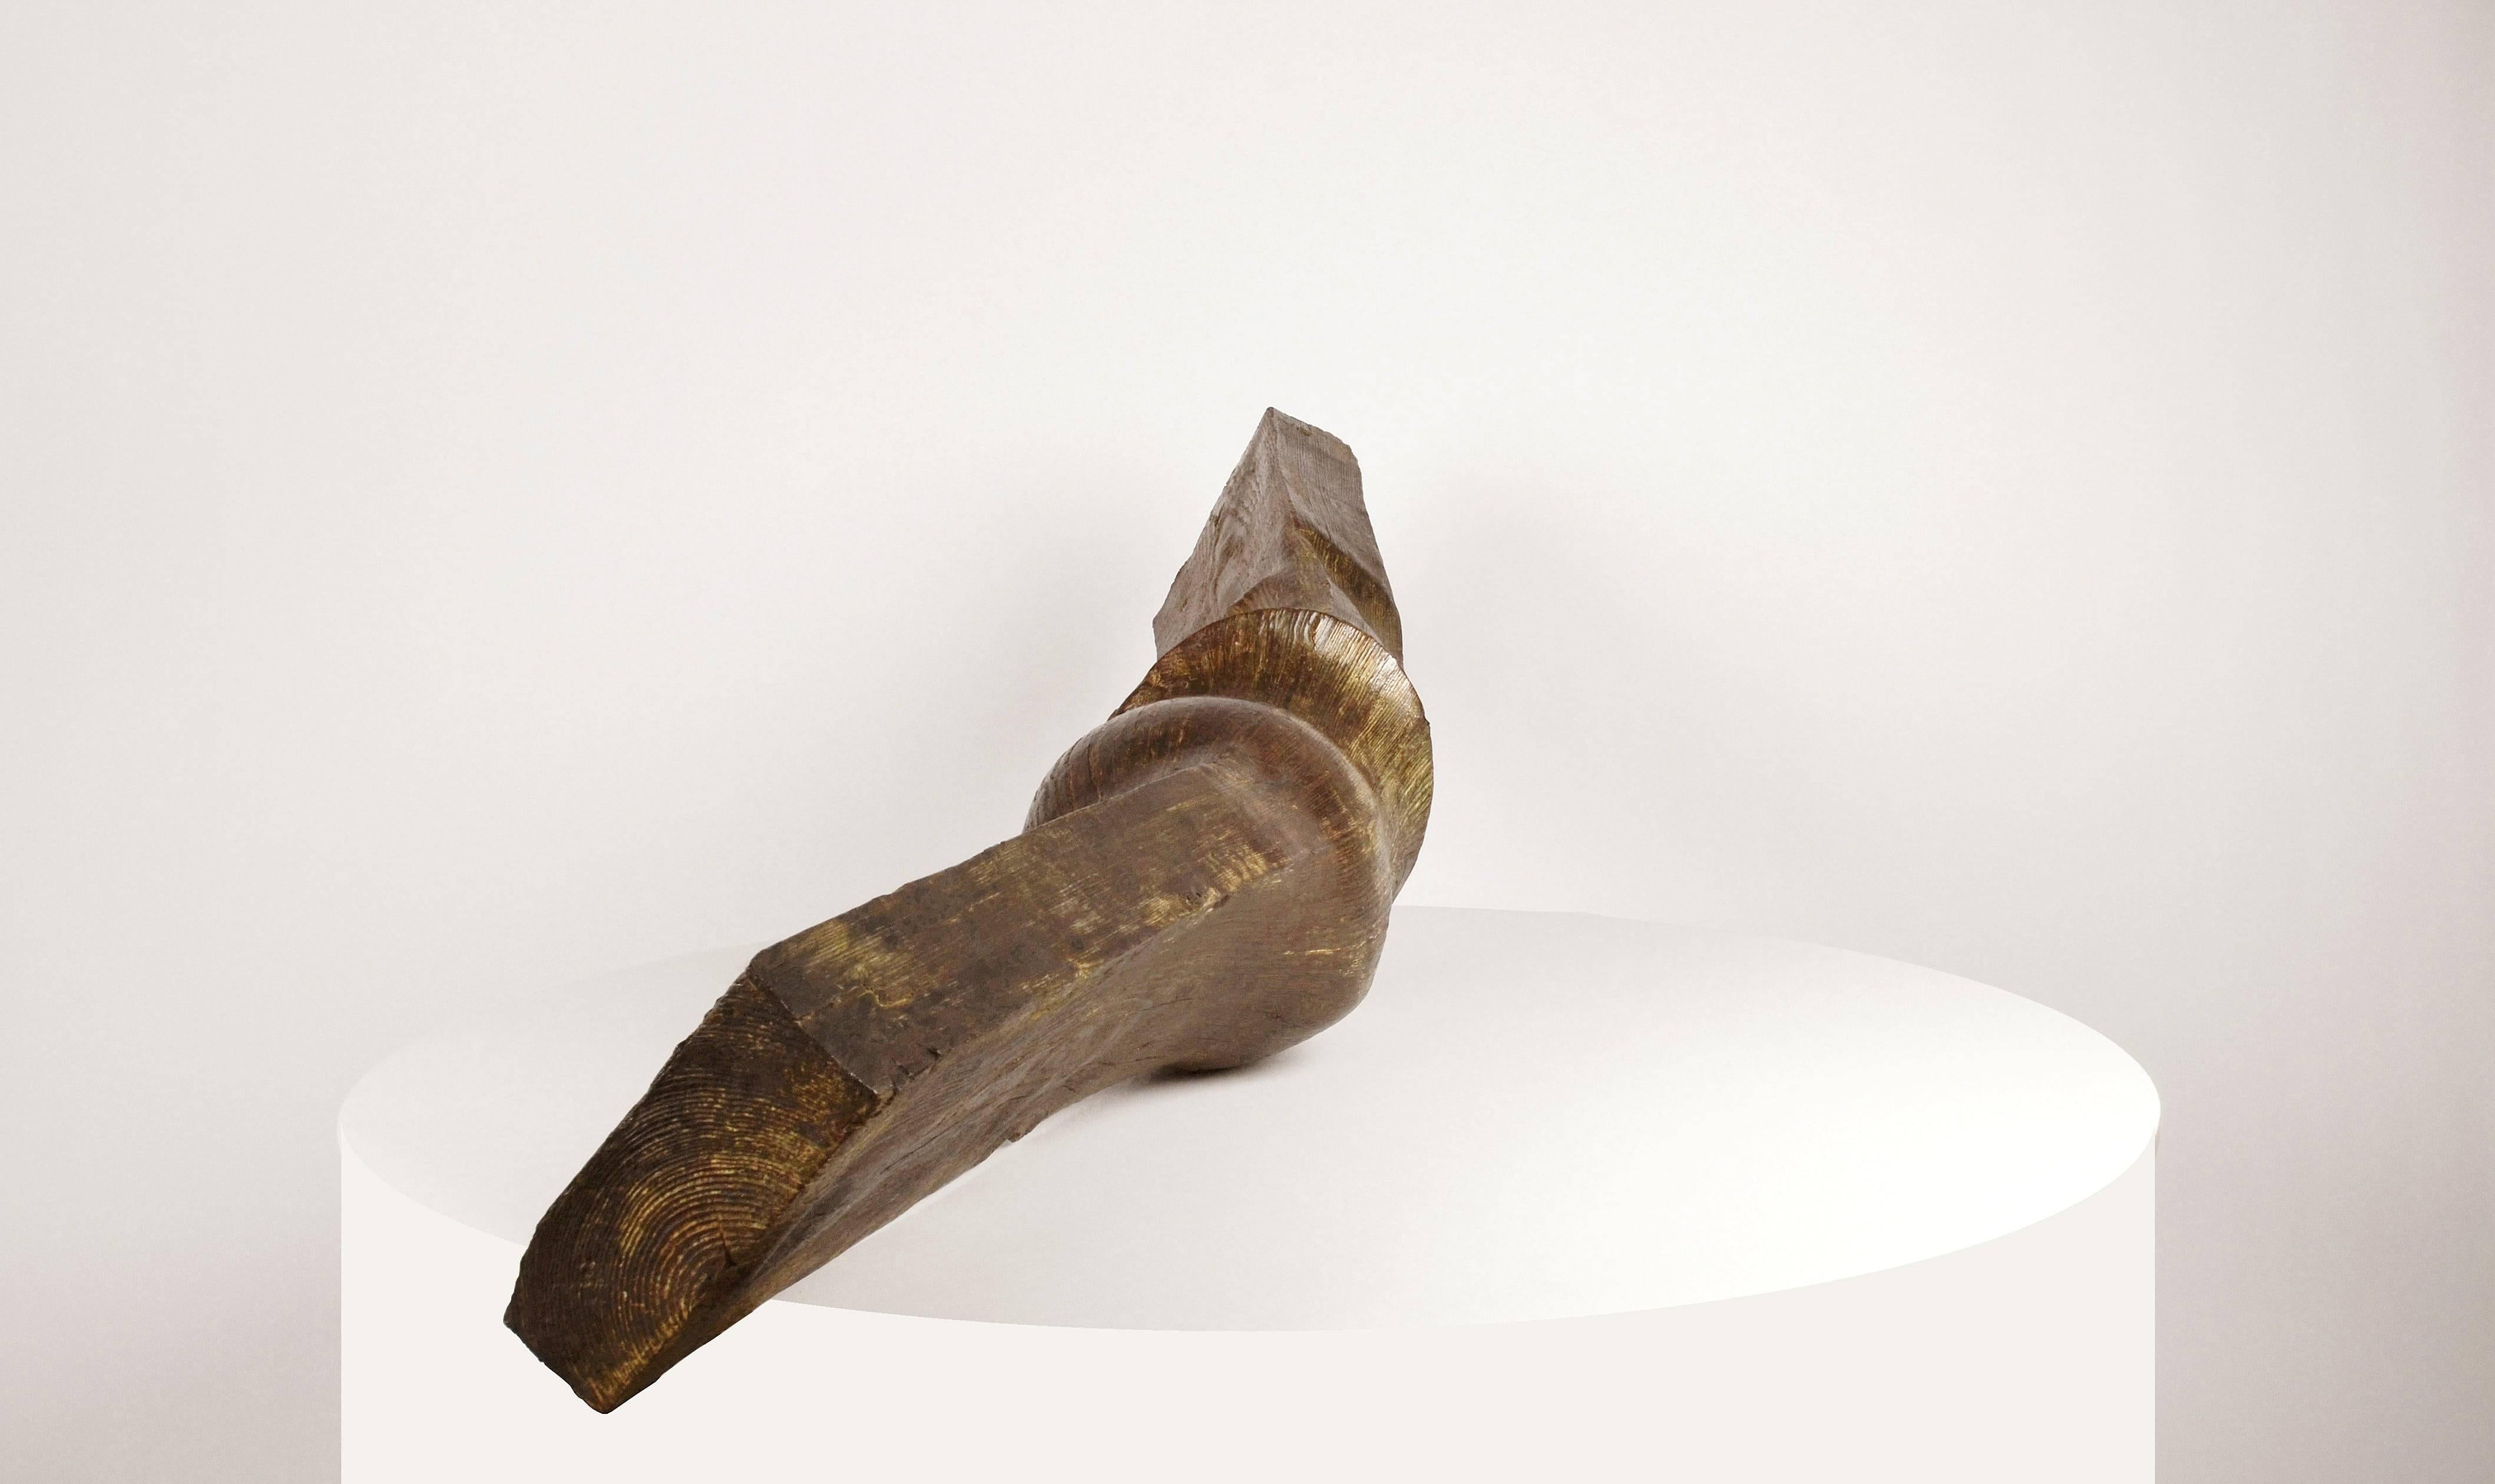 Poutre (Beam) by Romain Langlois - Trompe-l'œil bronze sculpture For Sale 1